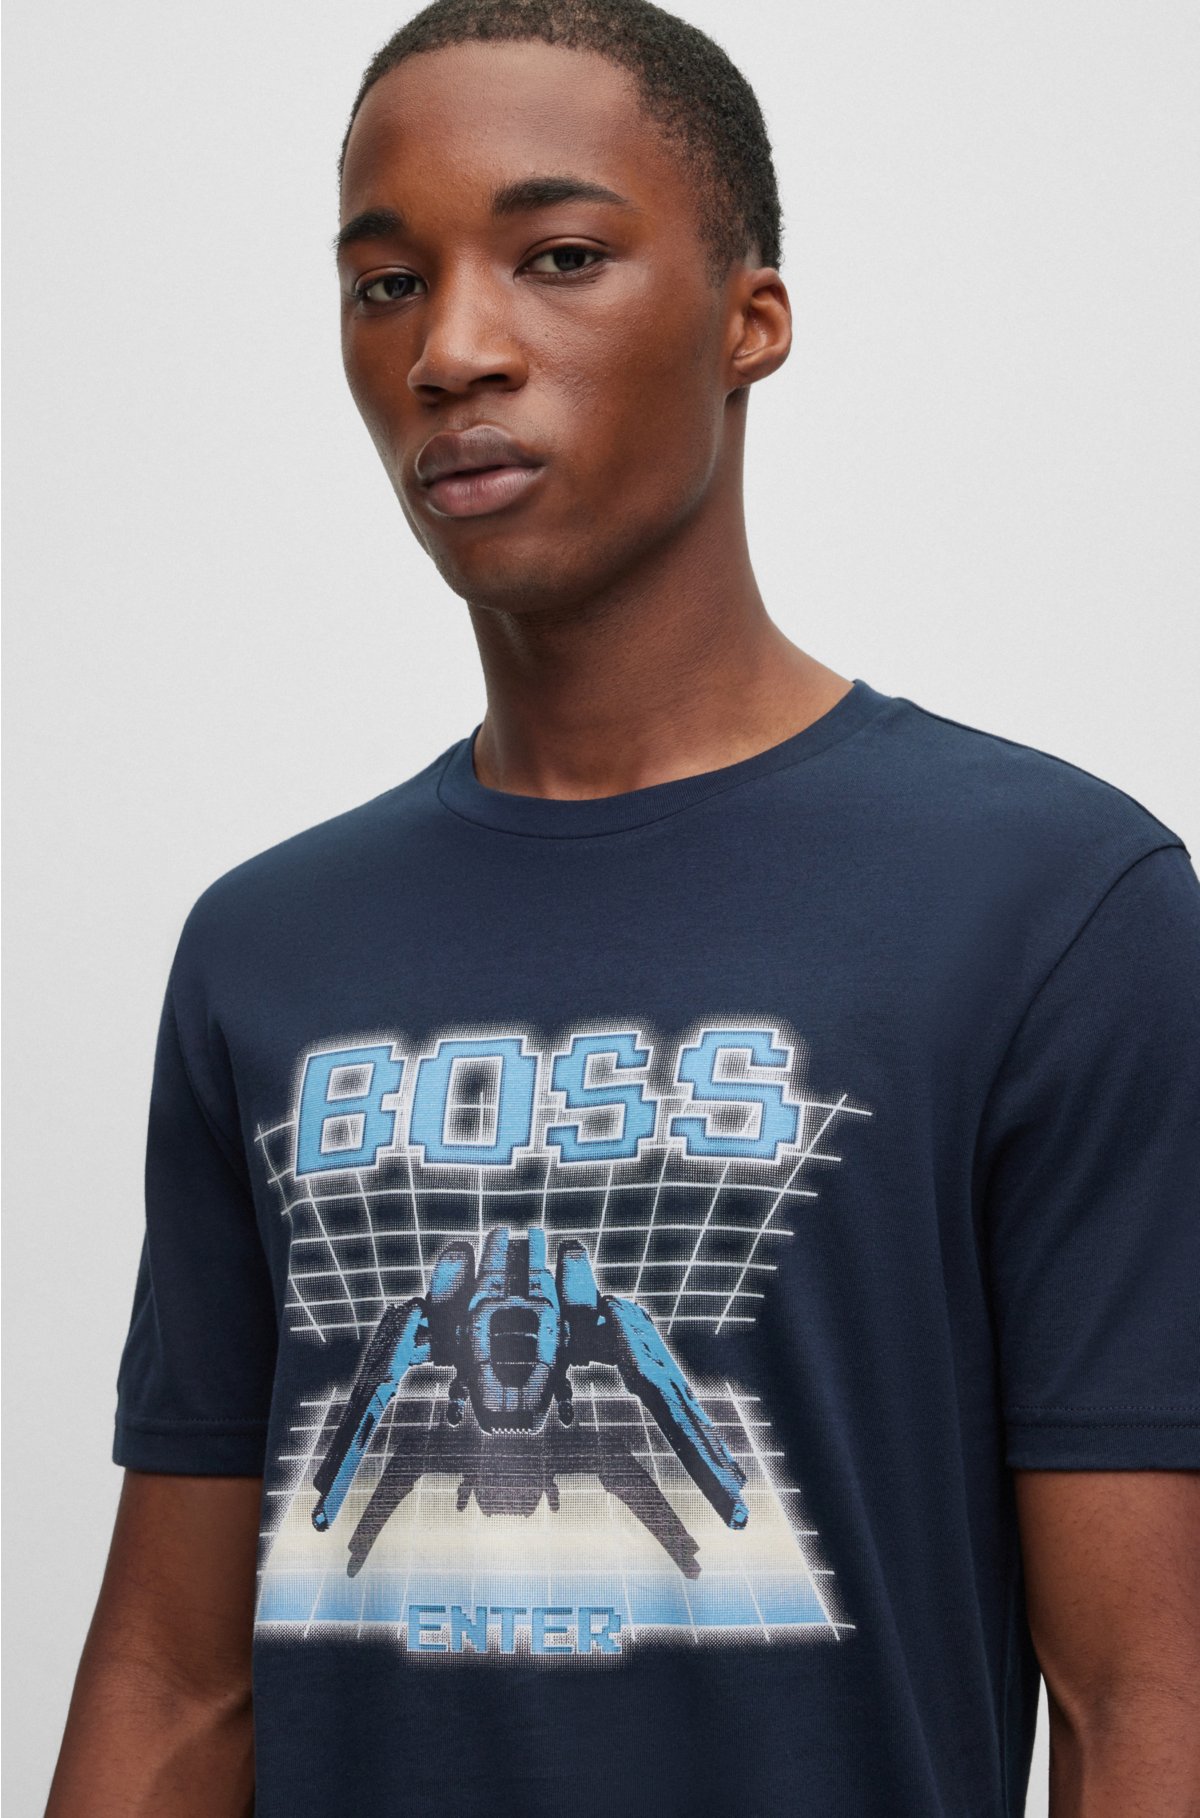 BOSS - コットンジャージー Tシャツ シーズンロゴアートワーク